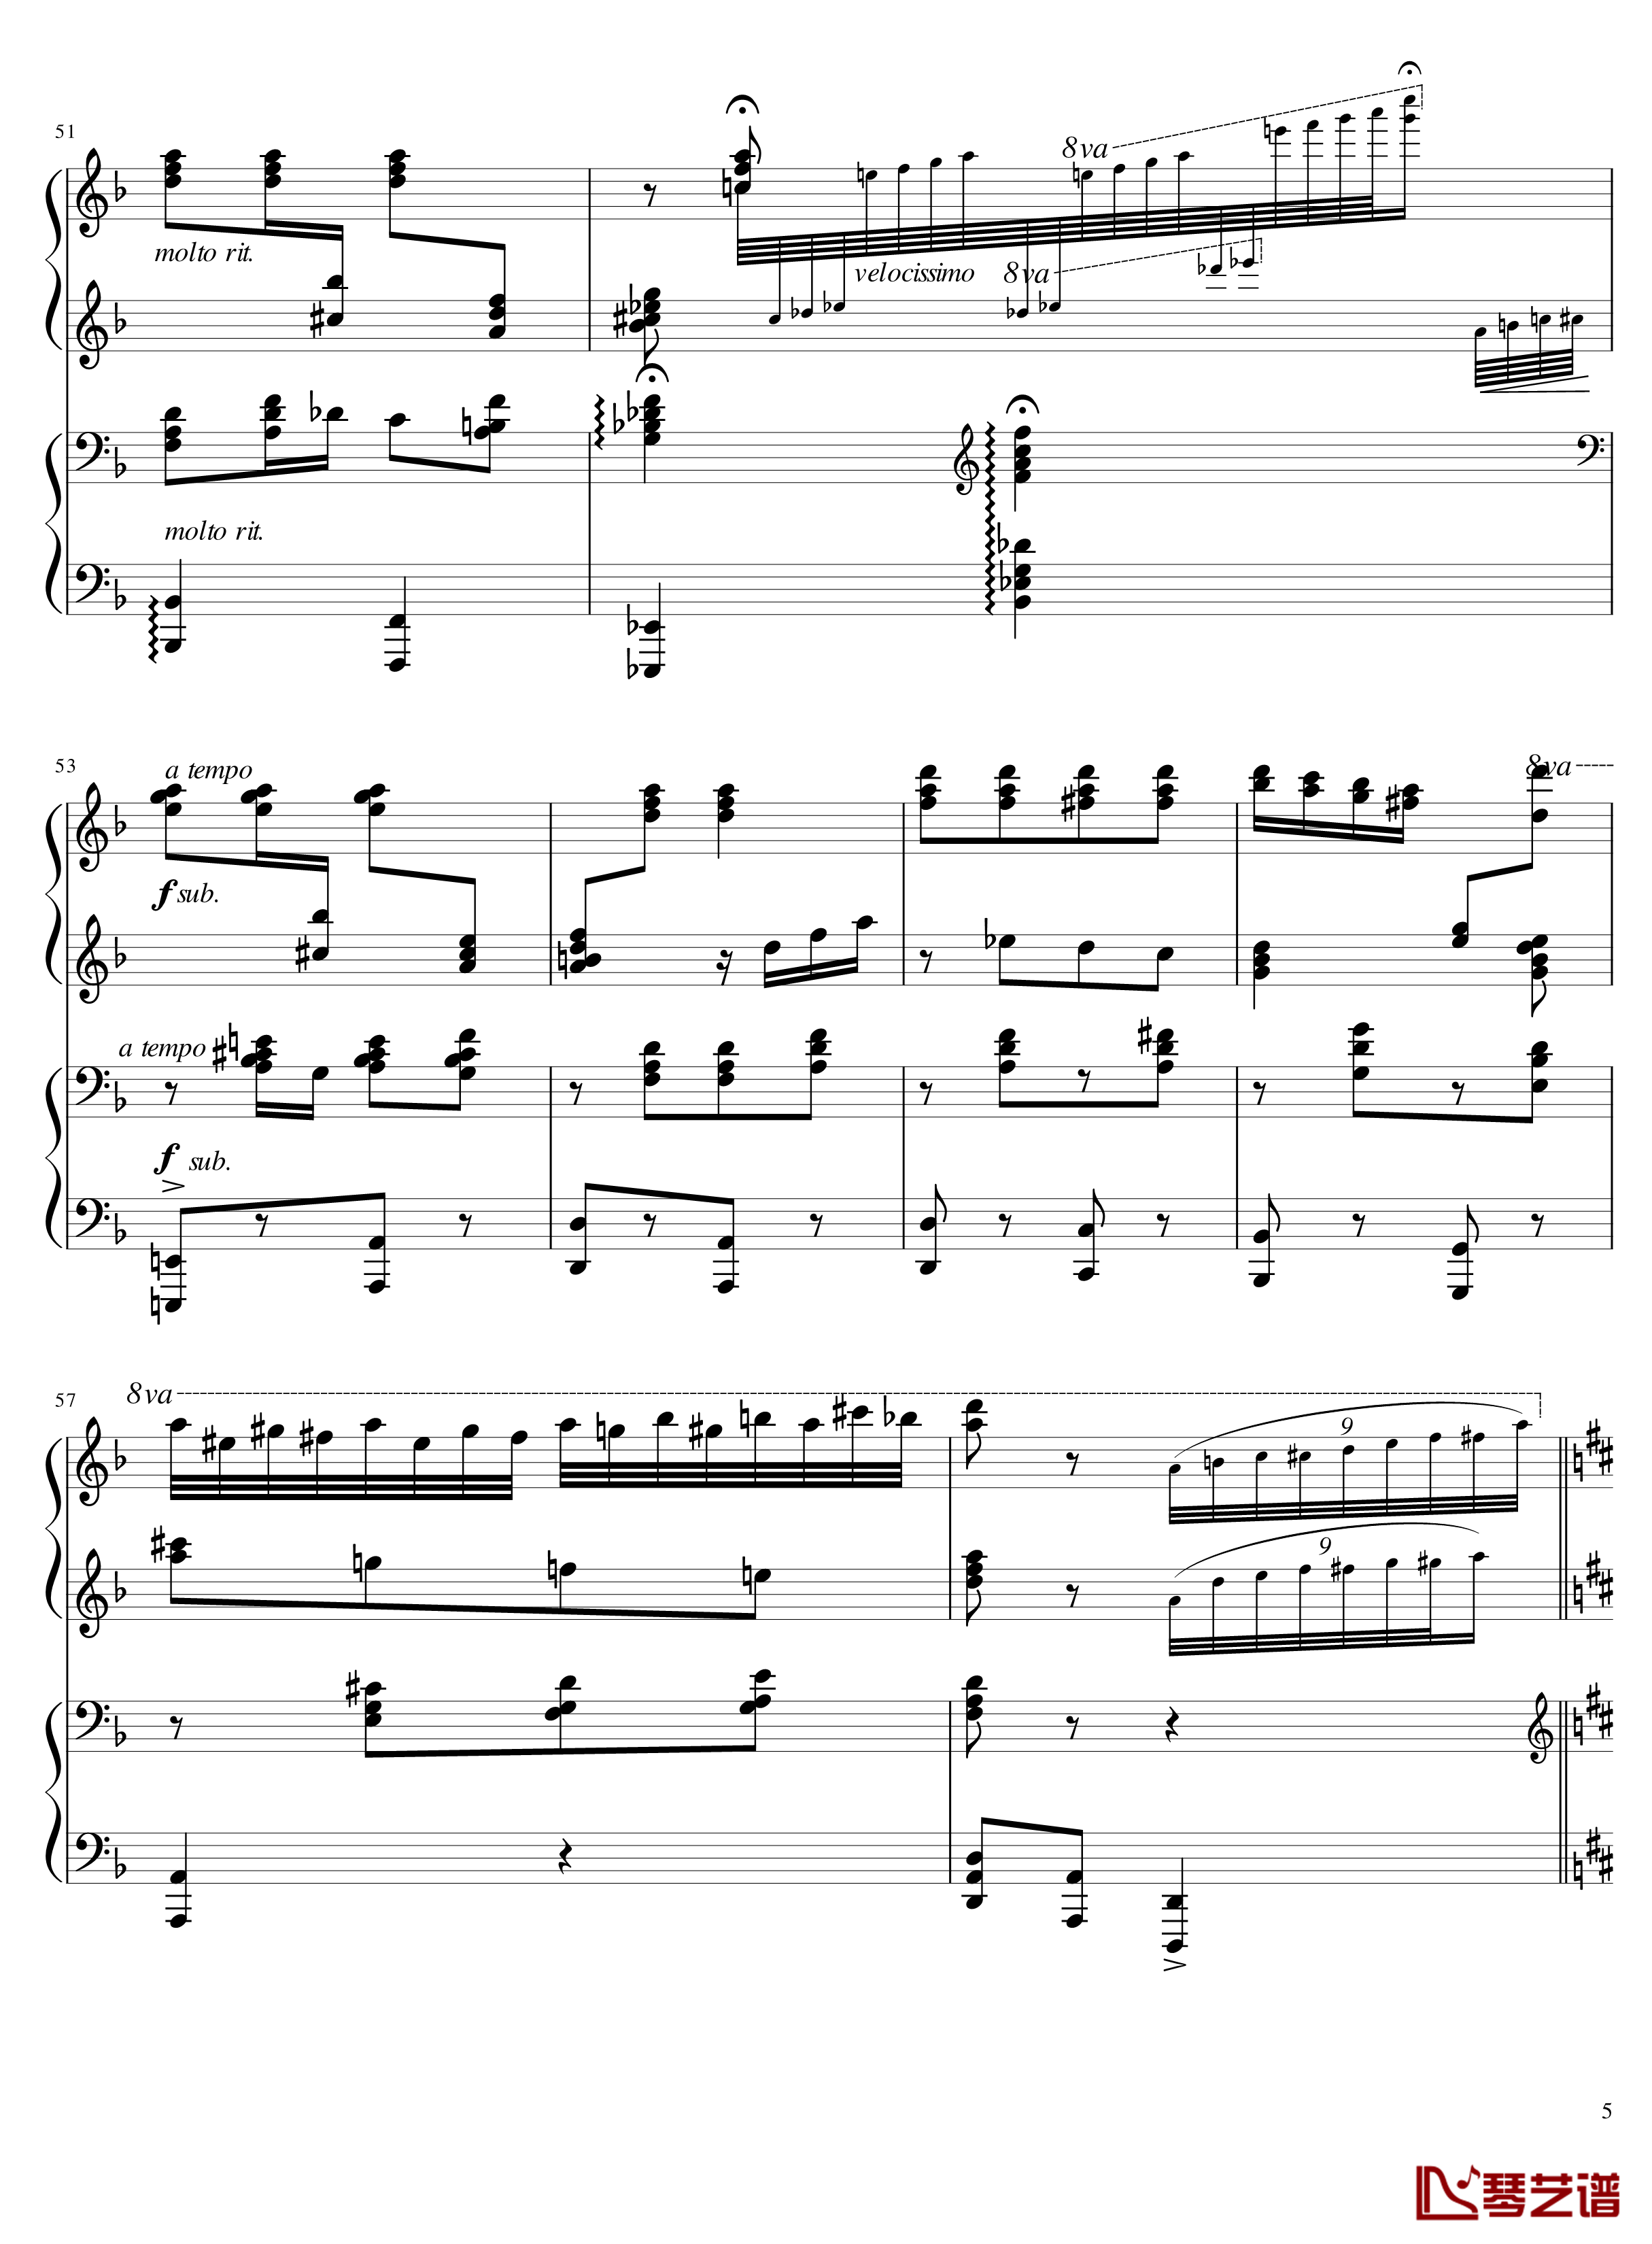 Italian Polka钢琴谱-意大利波尔卡-拉赫马尼若夫5